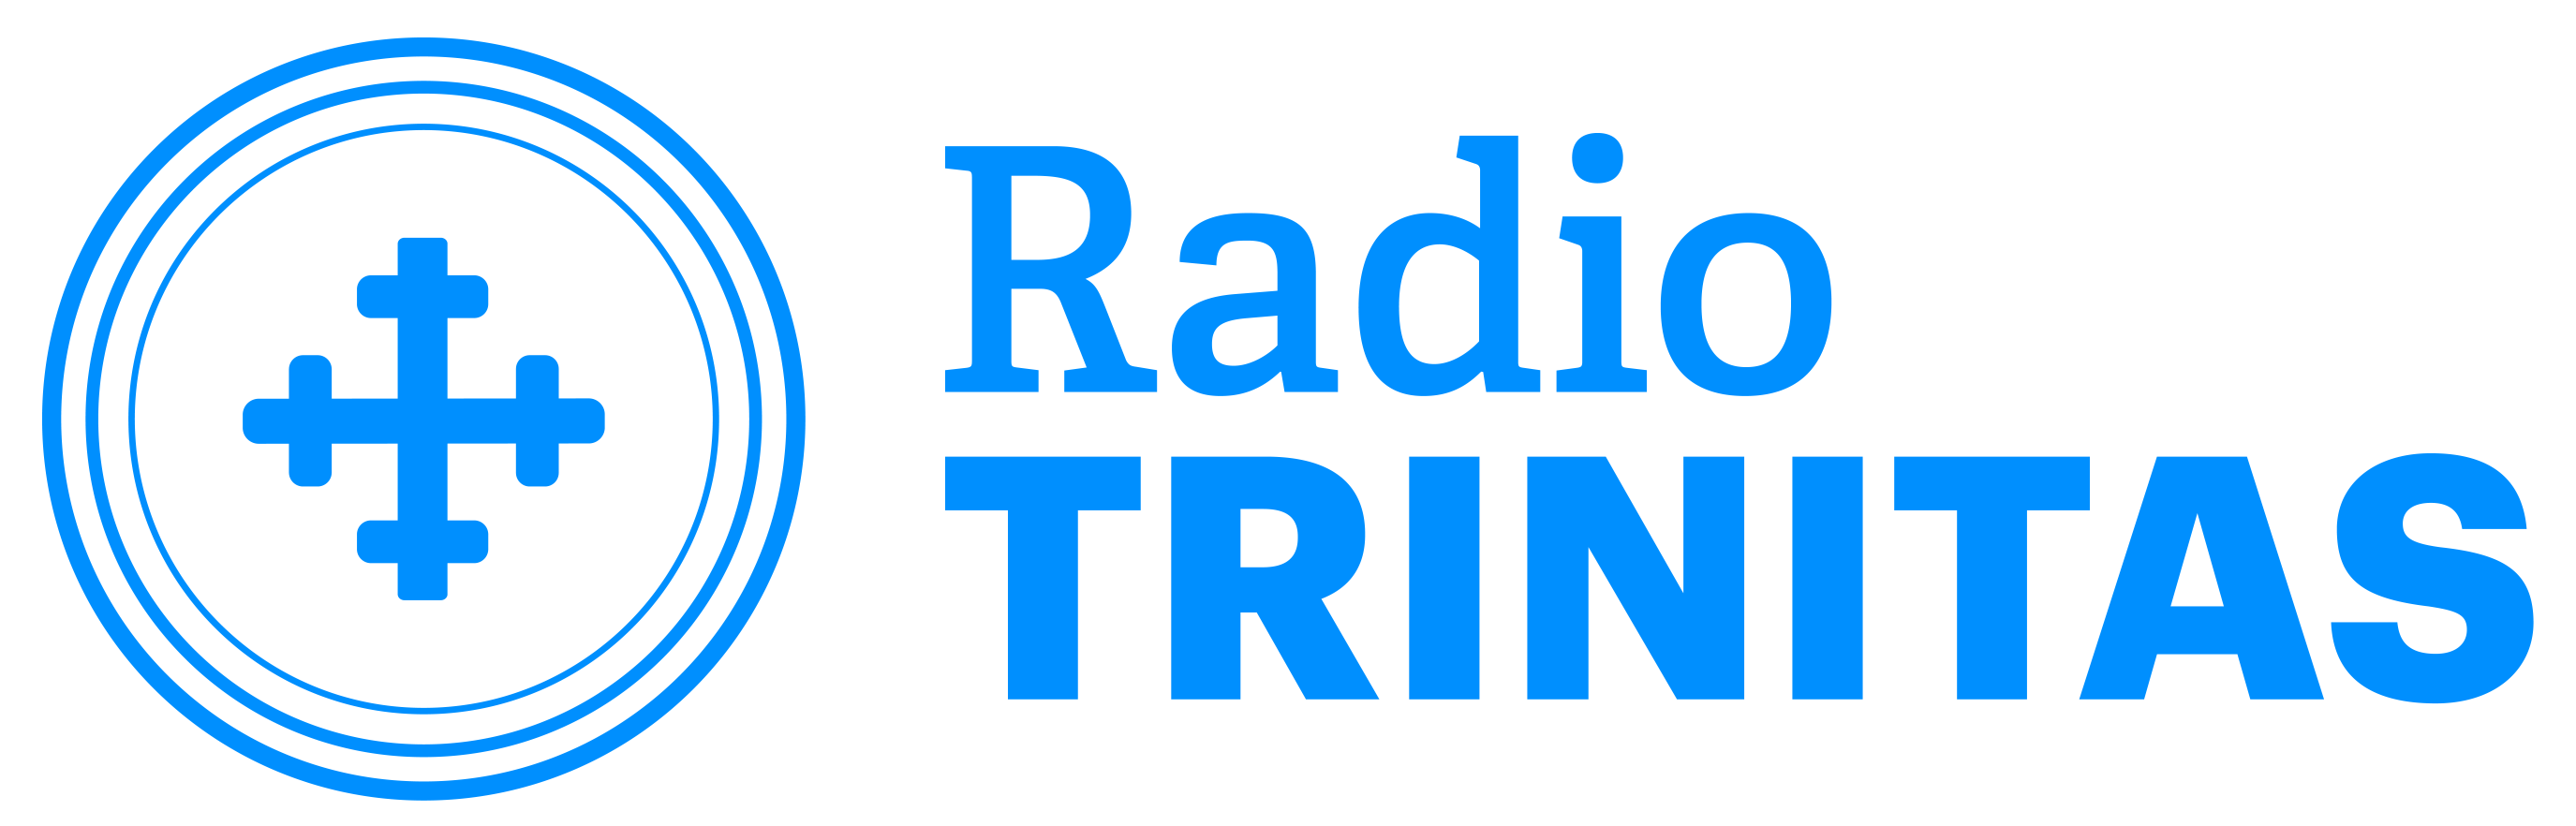 LOGO-2018-Radio-TRINITAS-01